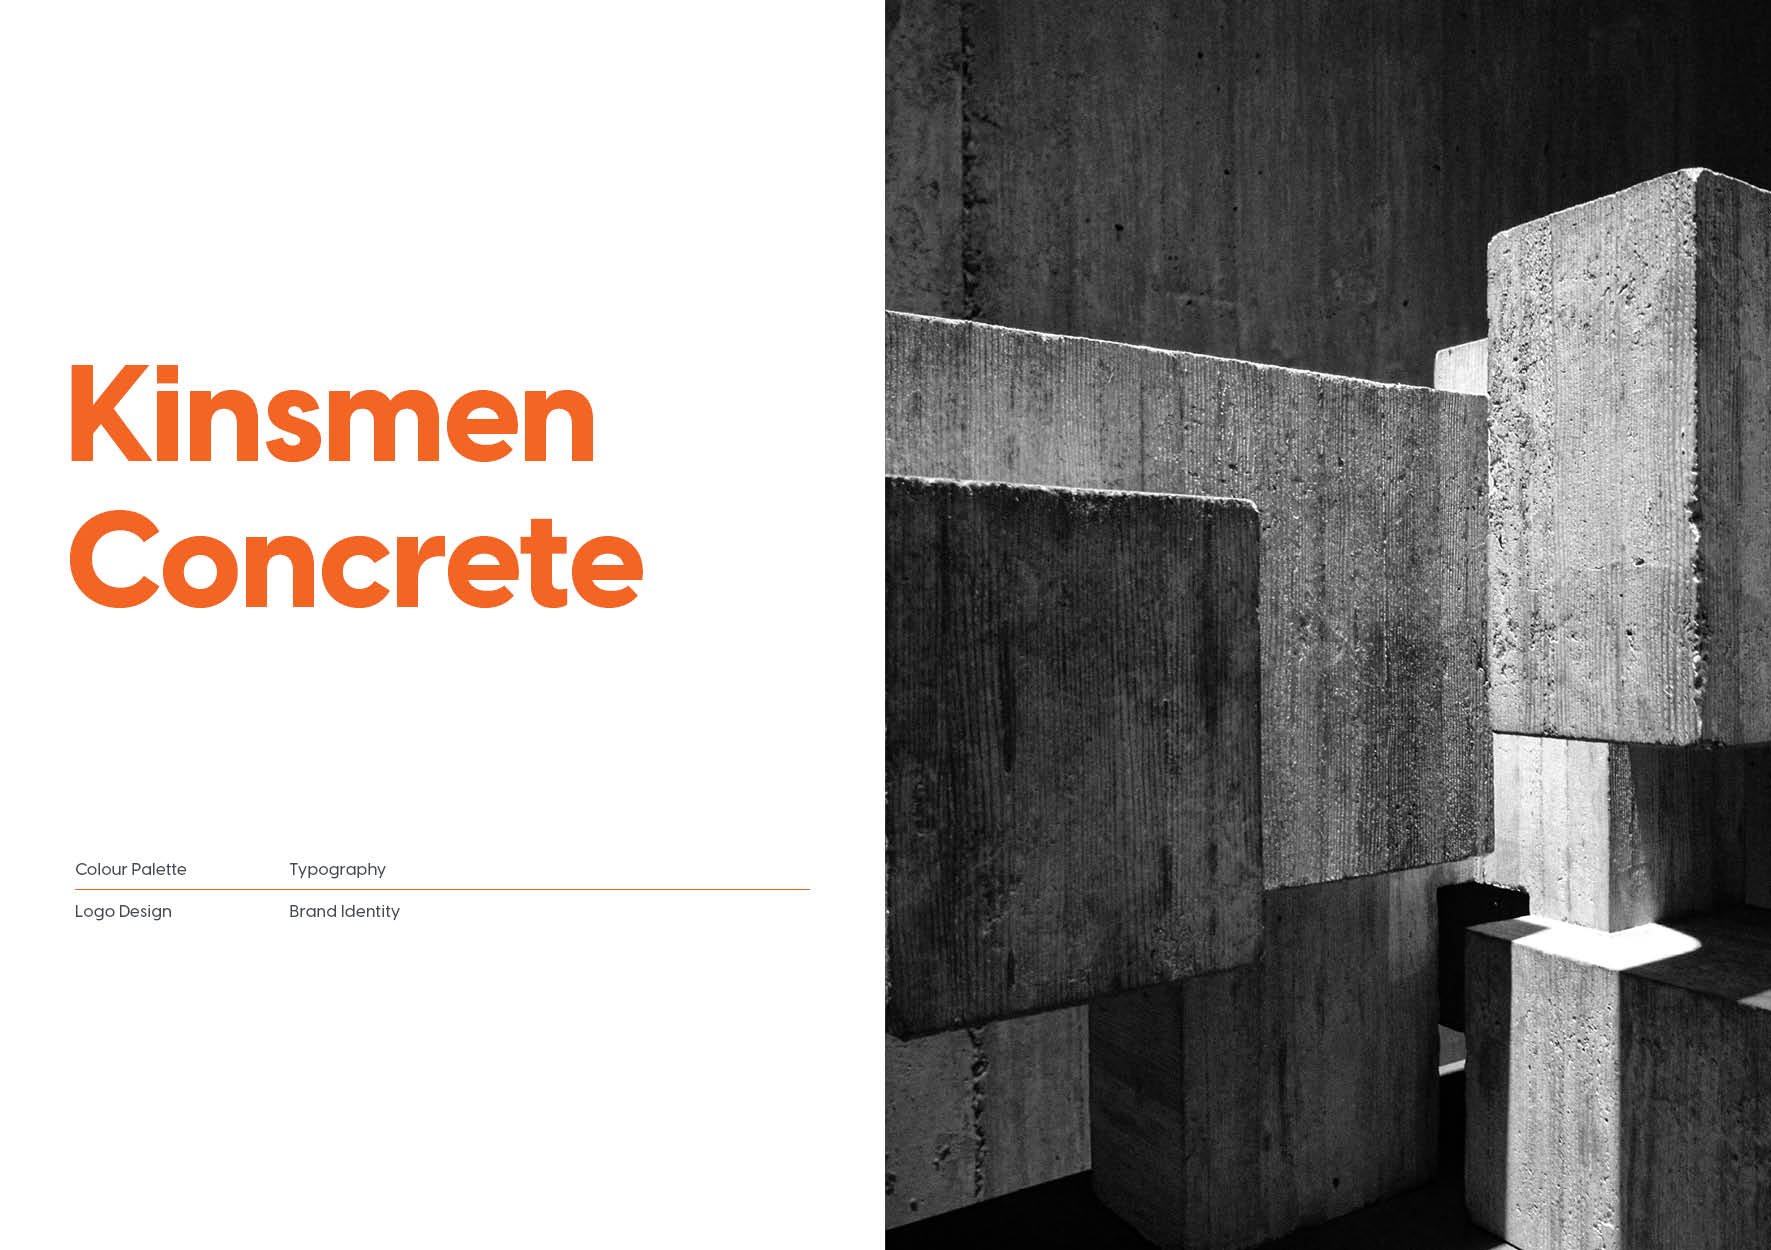 Kinsmen Concrete - Brand Identity.jpg